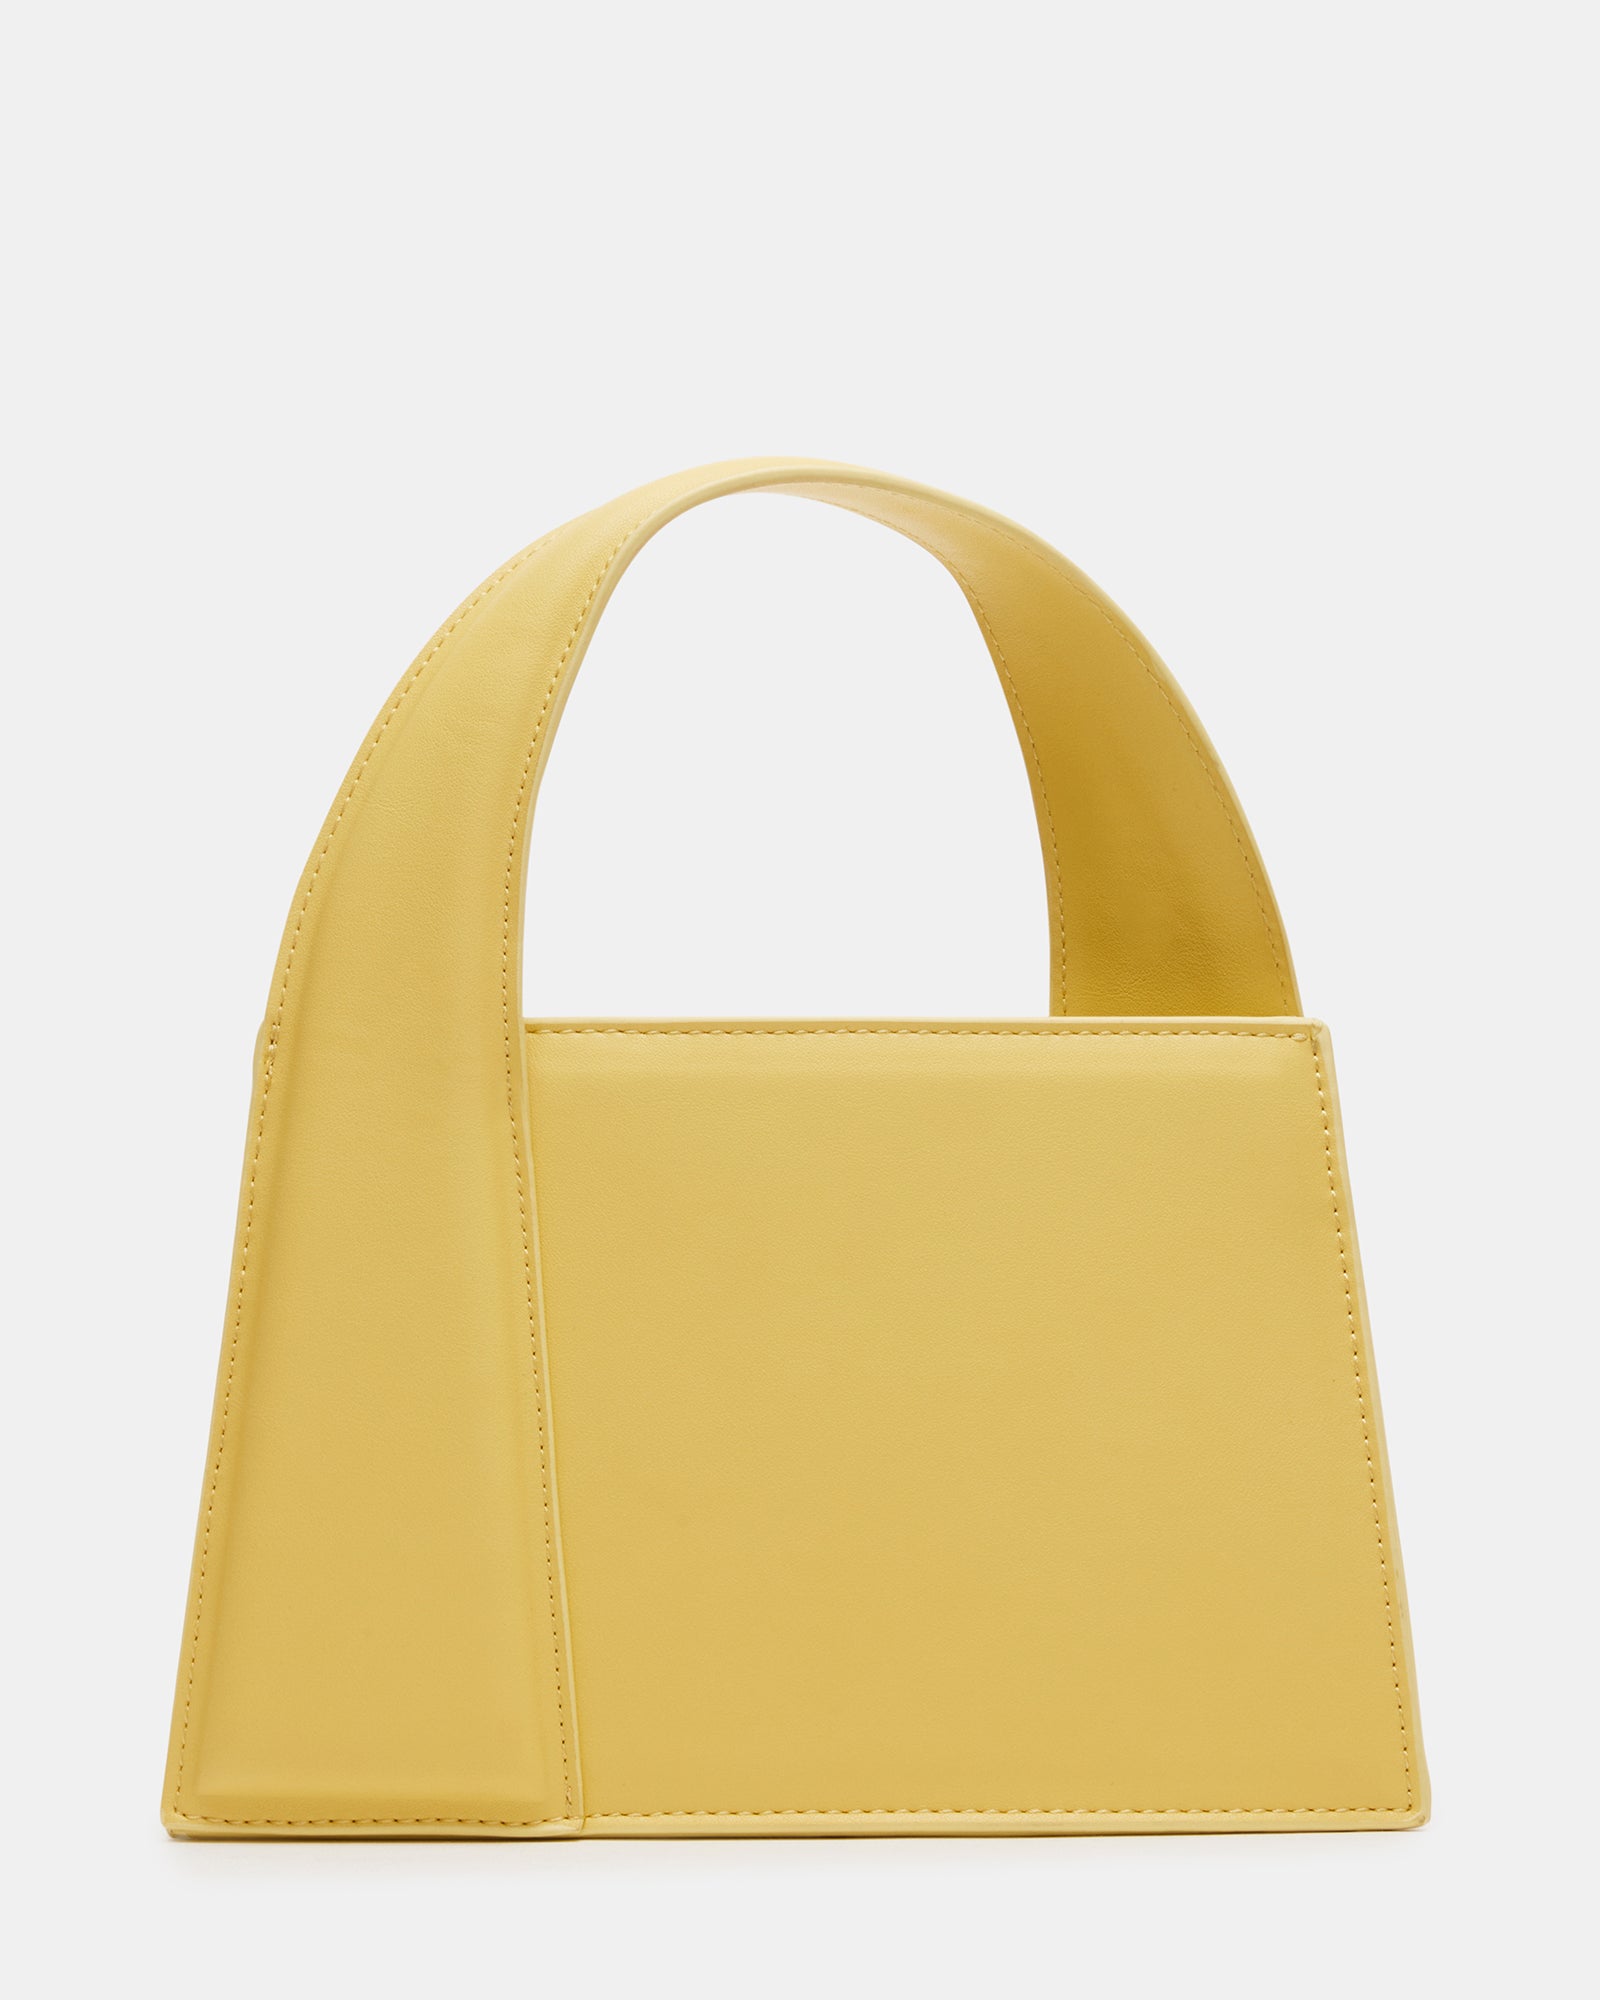 TcIFE Satchel Purses and Handbags for Women Shoulder Tote Bags 3D Model $34  - .fbx .obj .max - Free3D